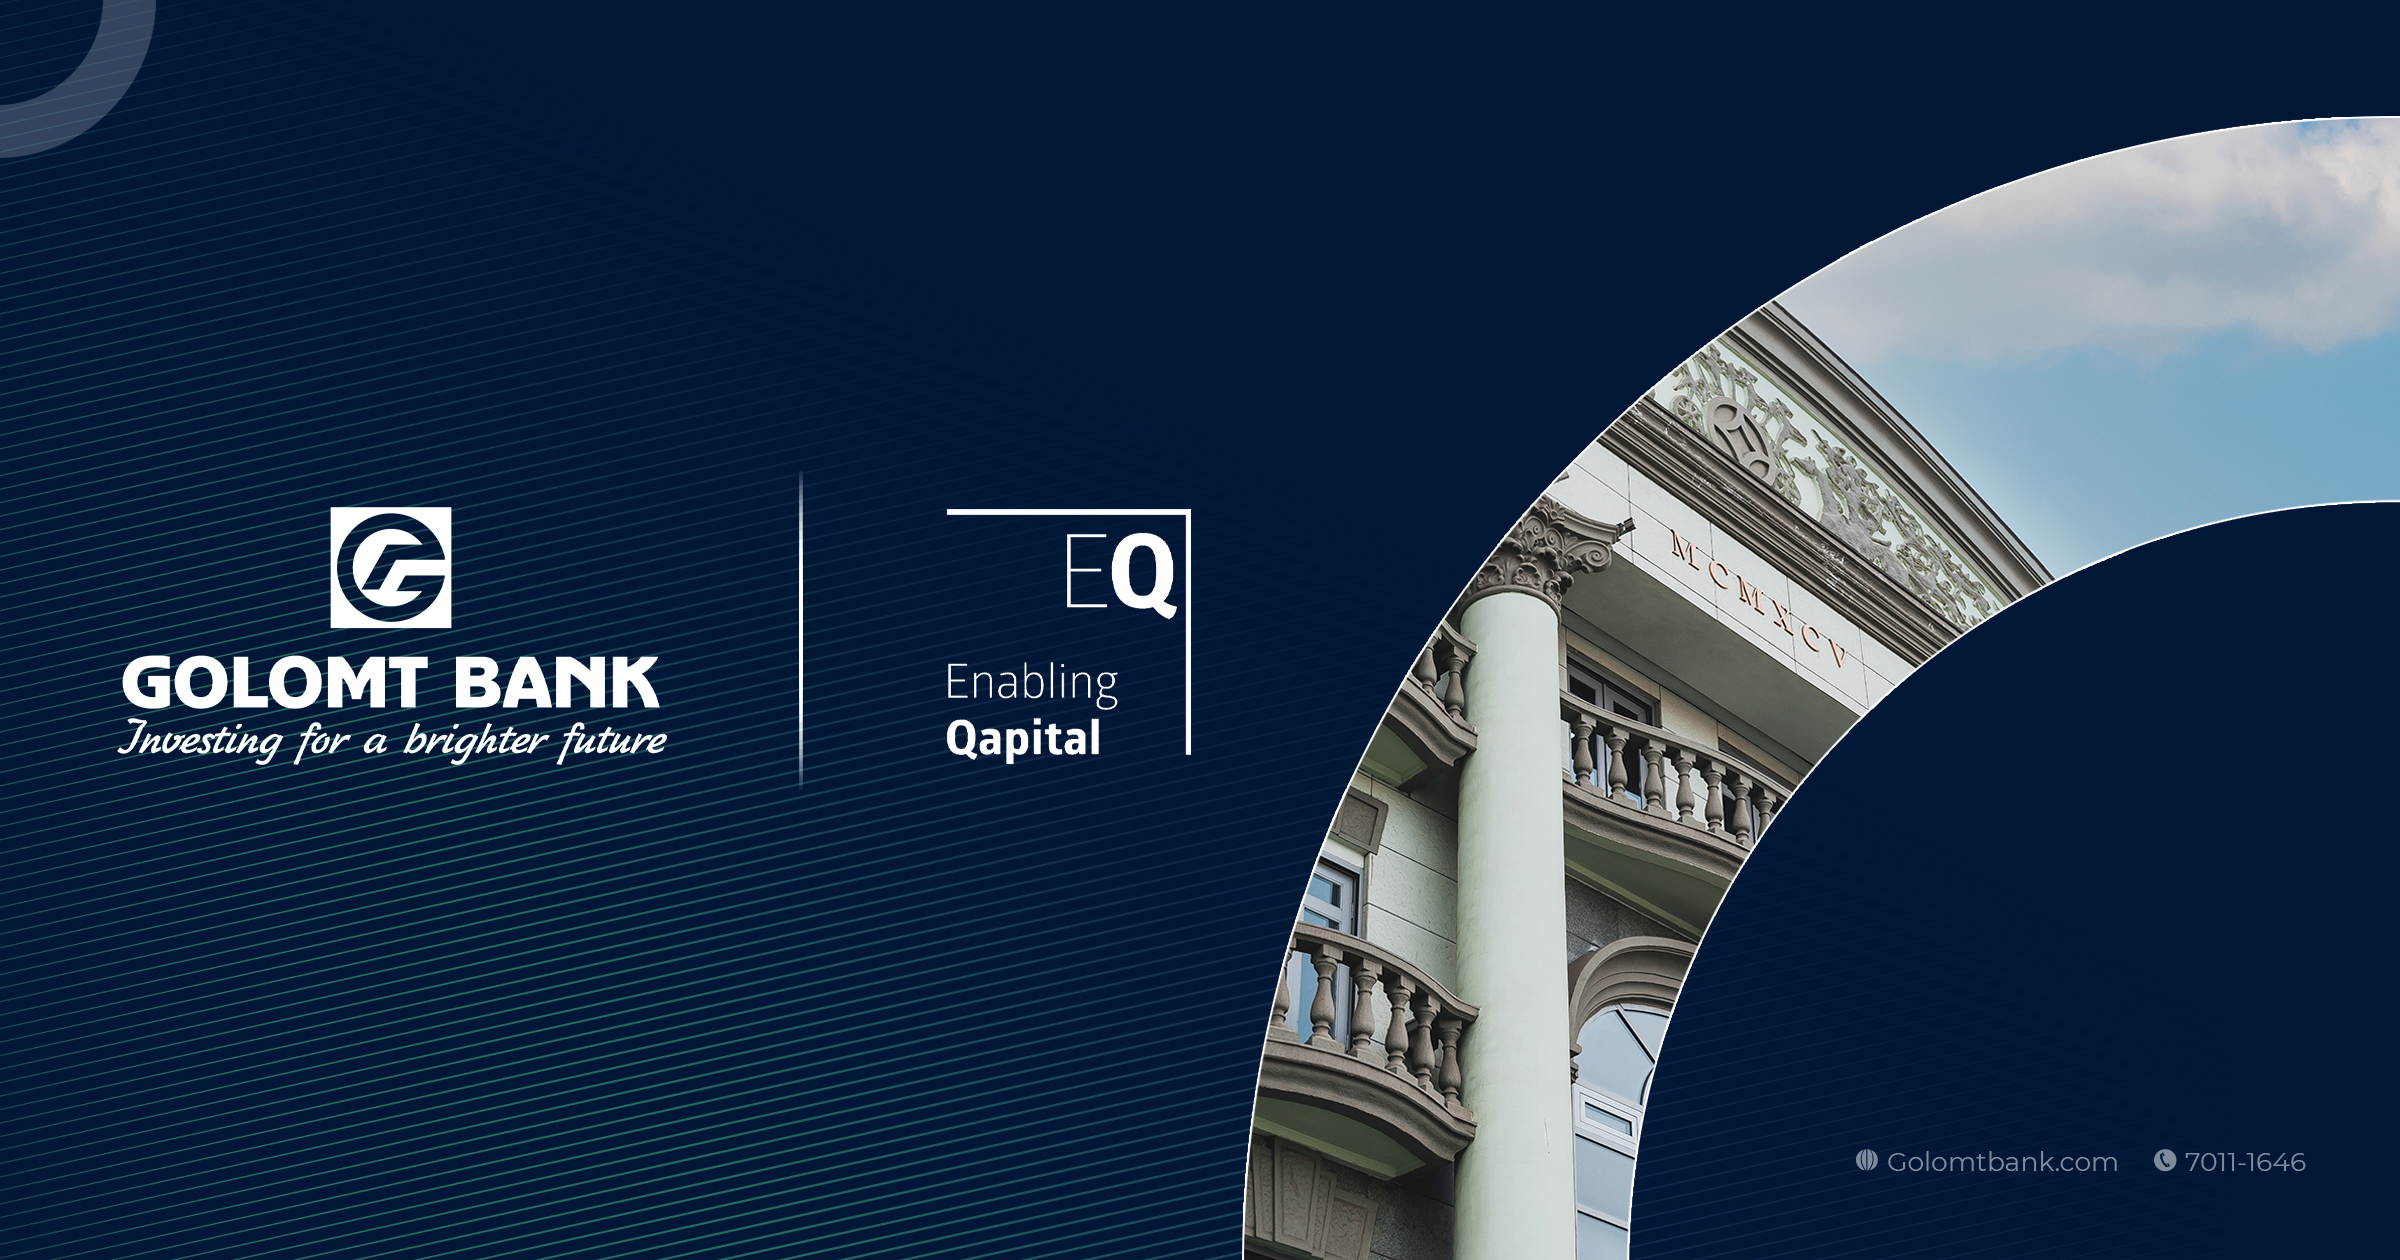 Голомт банк “Enabling Qapital” хөрөнгө оруулалтын сангаас ээлжит санхүүжилтээ амжилттай татан төвлөрүүллээ